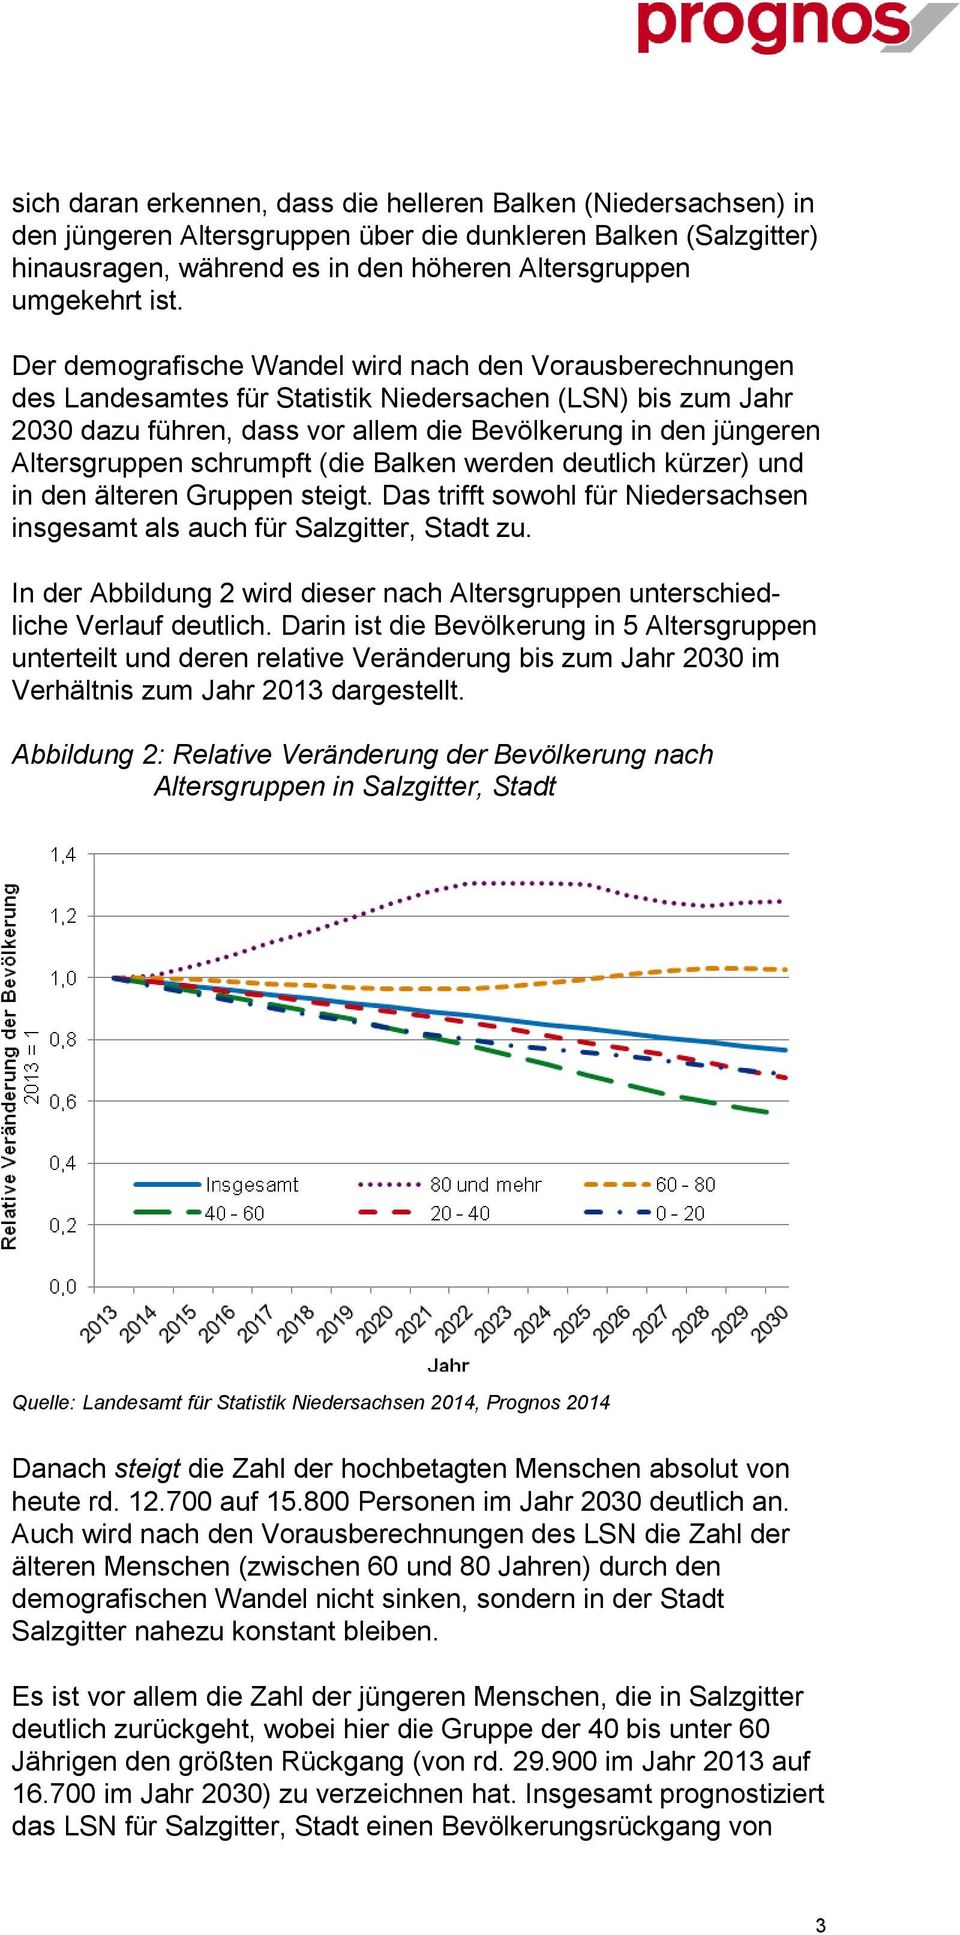 schrumpft (die Balken werden deutlich kürzer) und in den älteren Gruppen steigt. Das trifft sowohl für Niedersachsen insgesamt als auch für Salzgitter, Stadt zu.